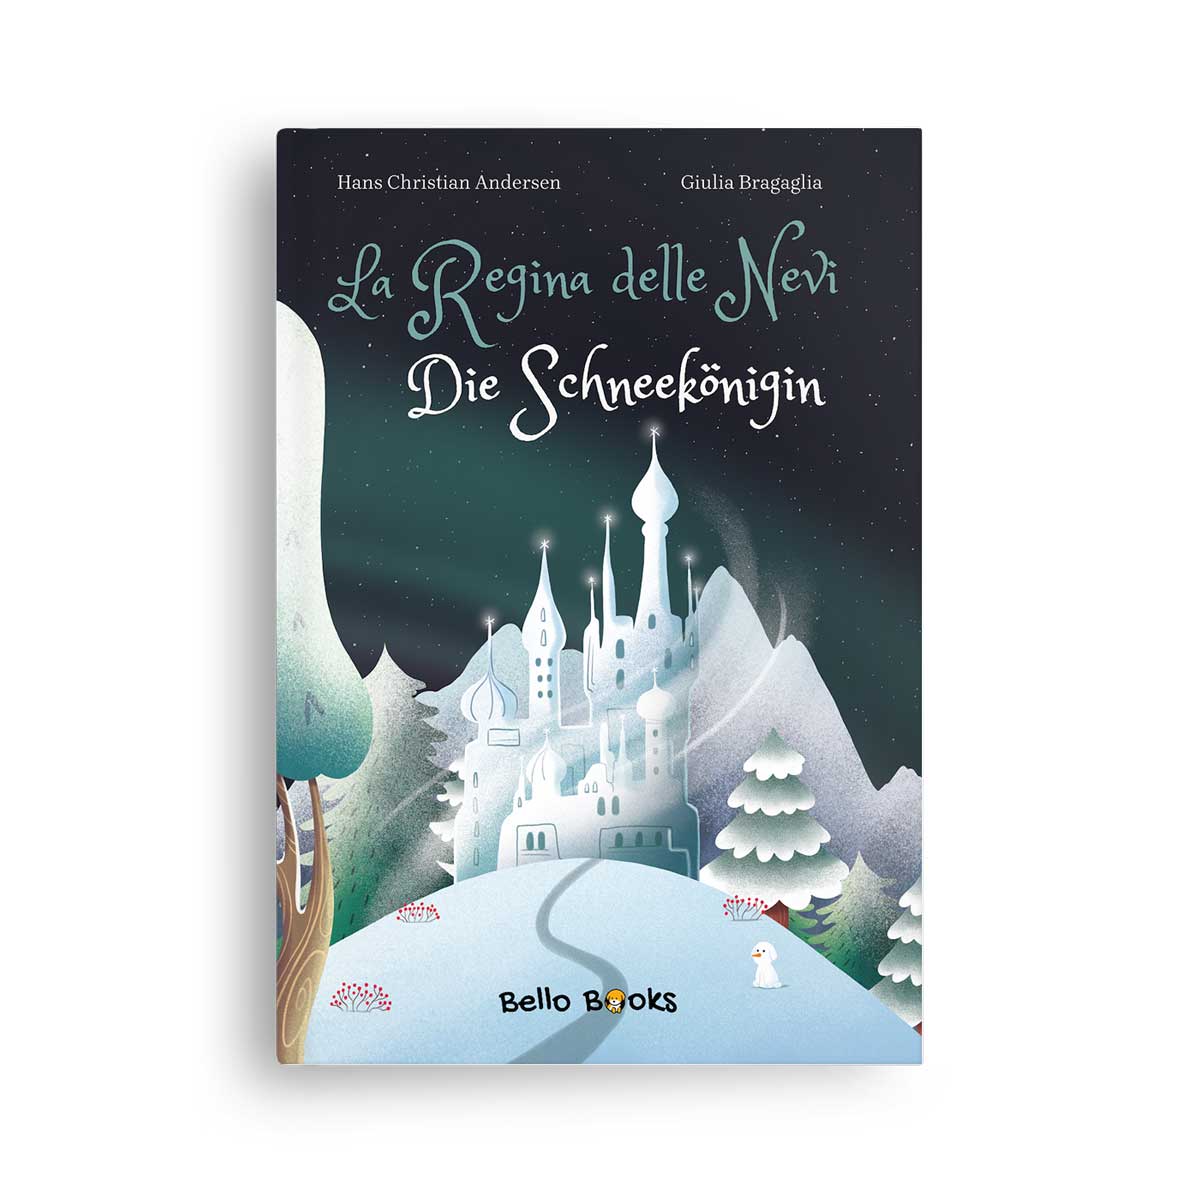 Bello Books: La Regina delle Nevi - Die Schneekönigin